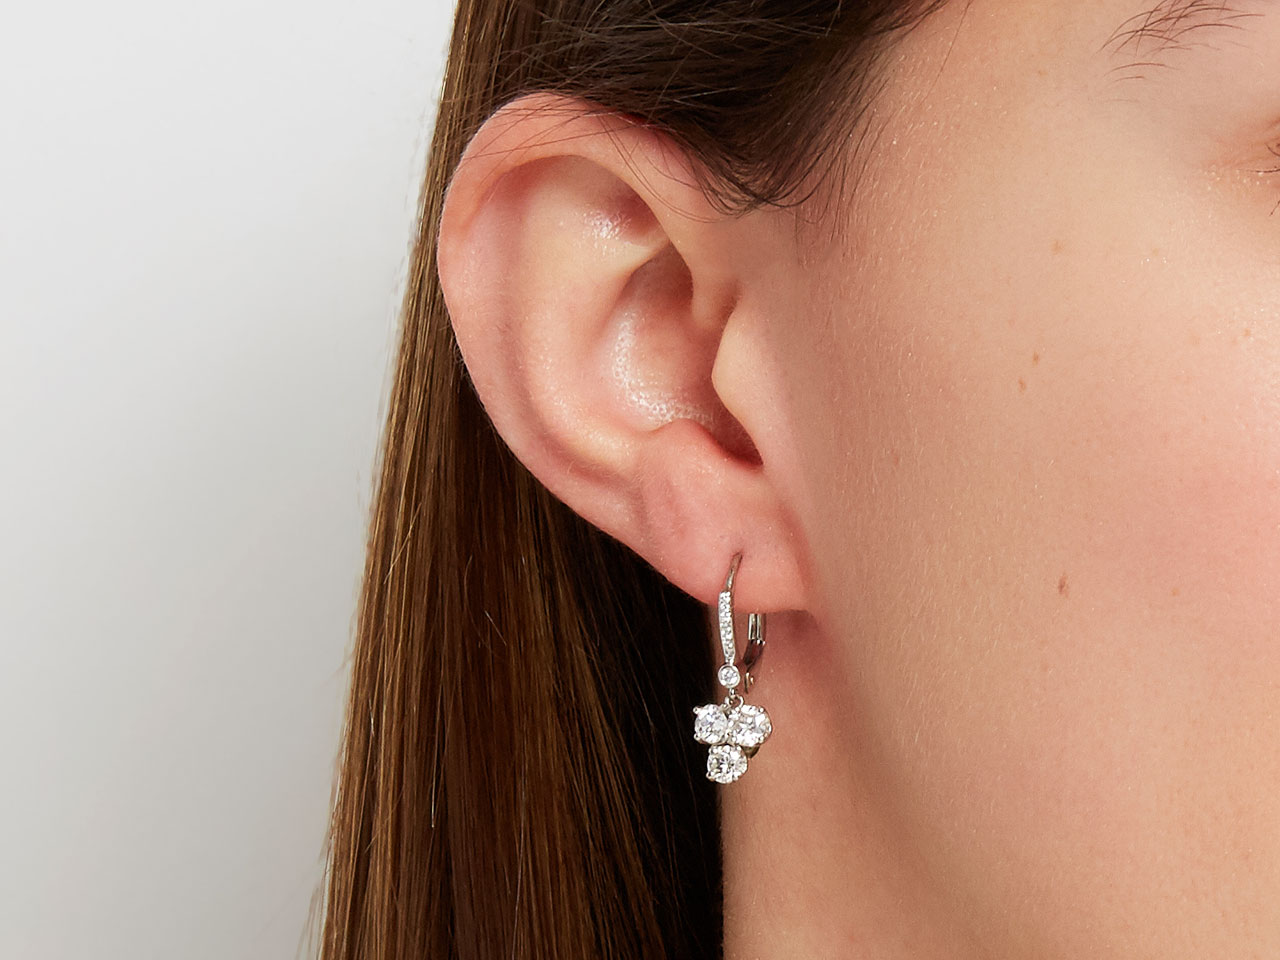 Beladora 'Bespoke' Diamond Drop Earrings in 18K White Gold